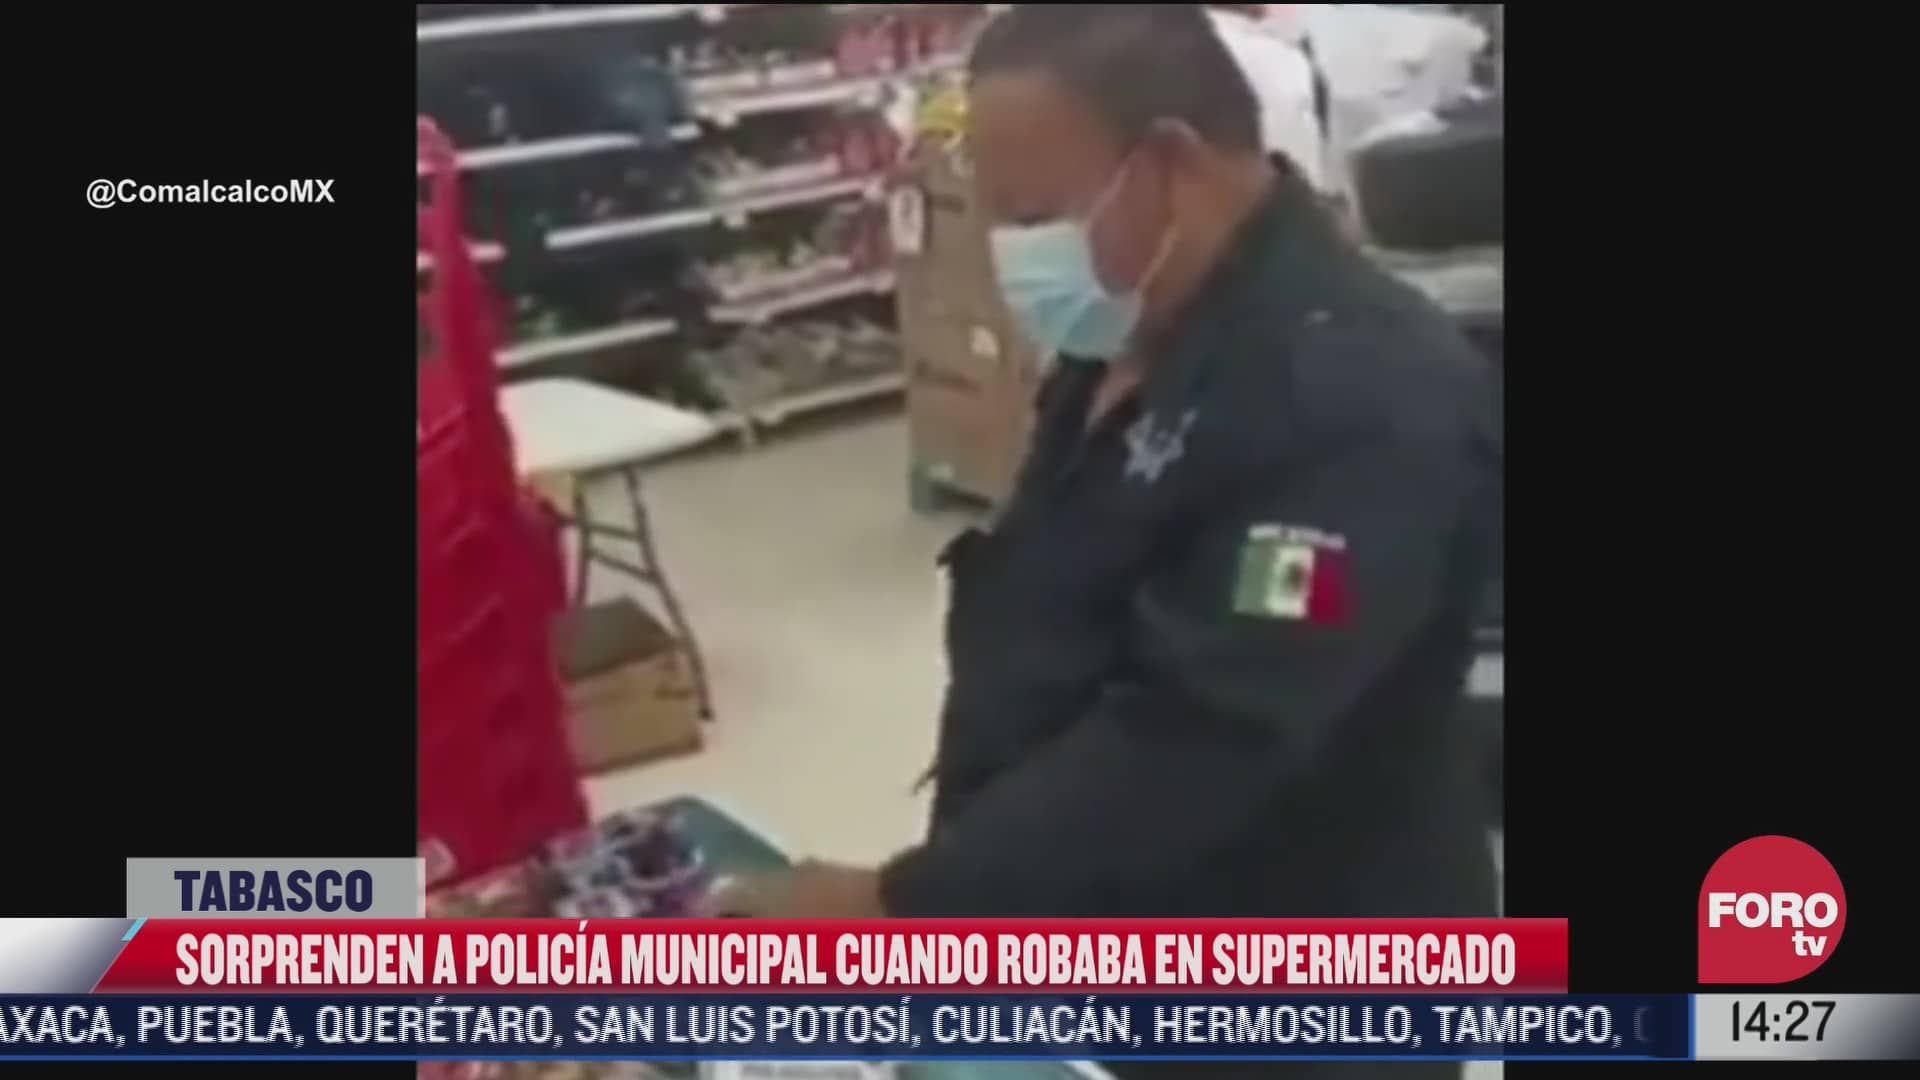 suspenden a policia de tabasco por robar mercancia de un supermercado